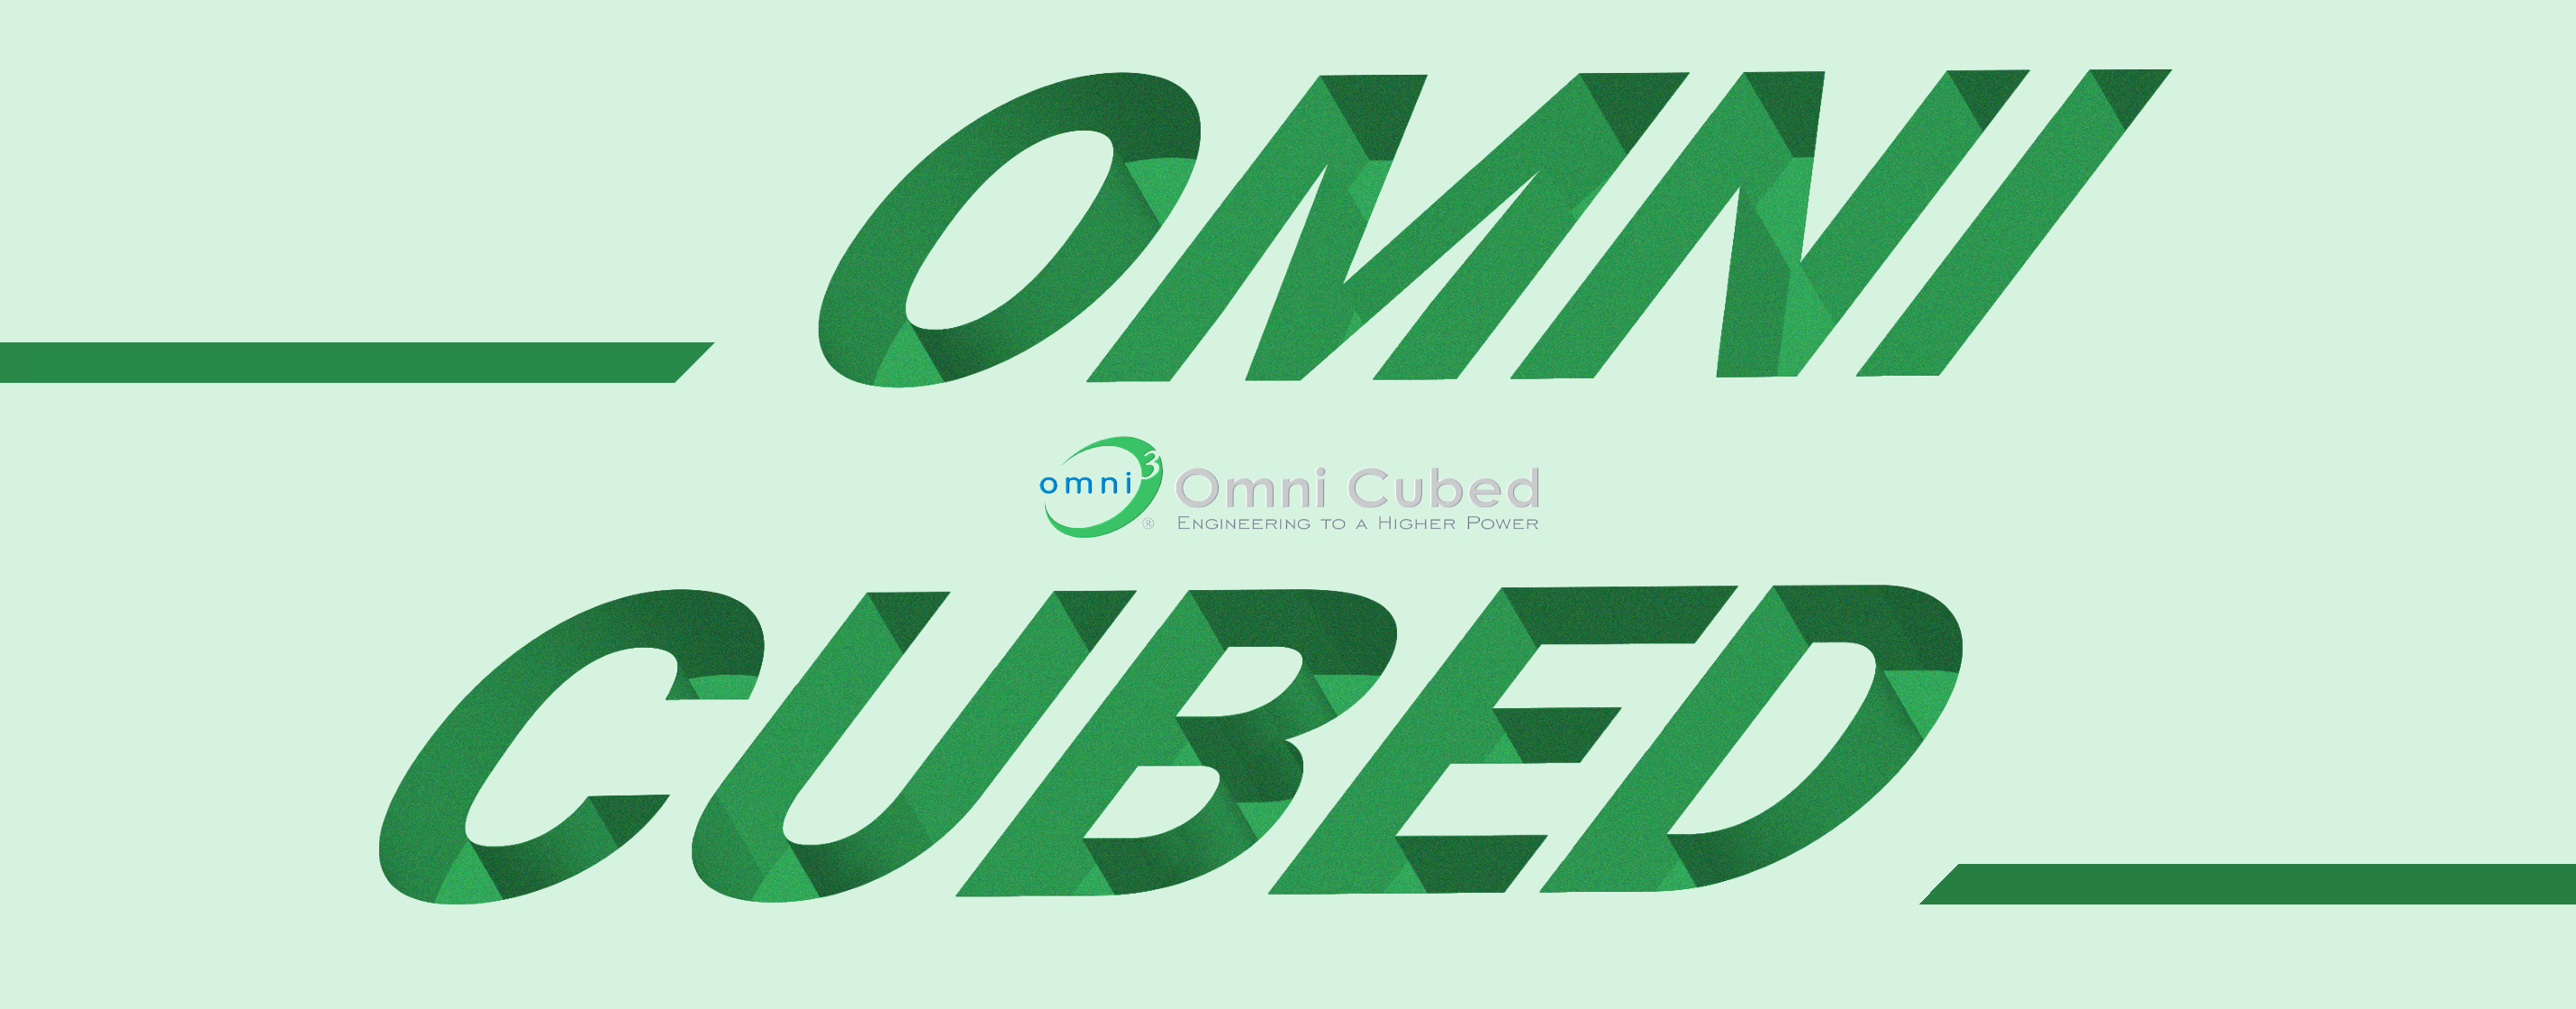 Omni_Cubed_Mobile_a677965f-c394-4a7d-9b90-ee2f8e0d5c4a.png